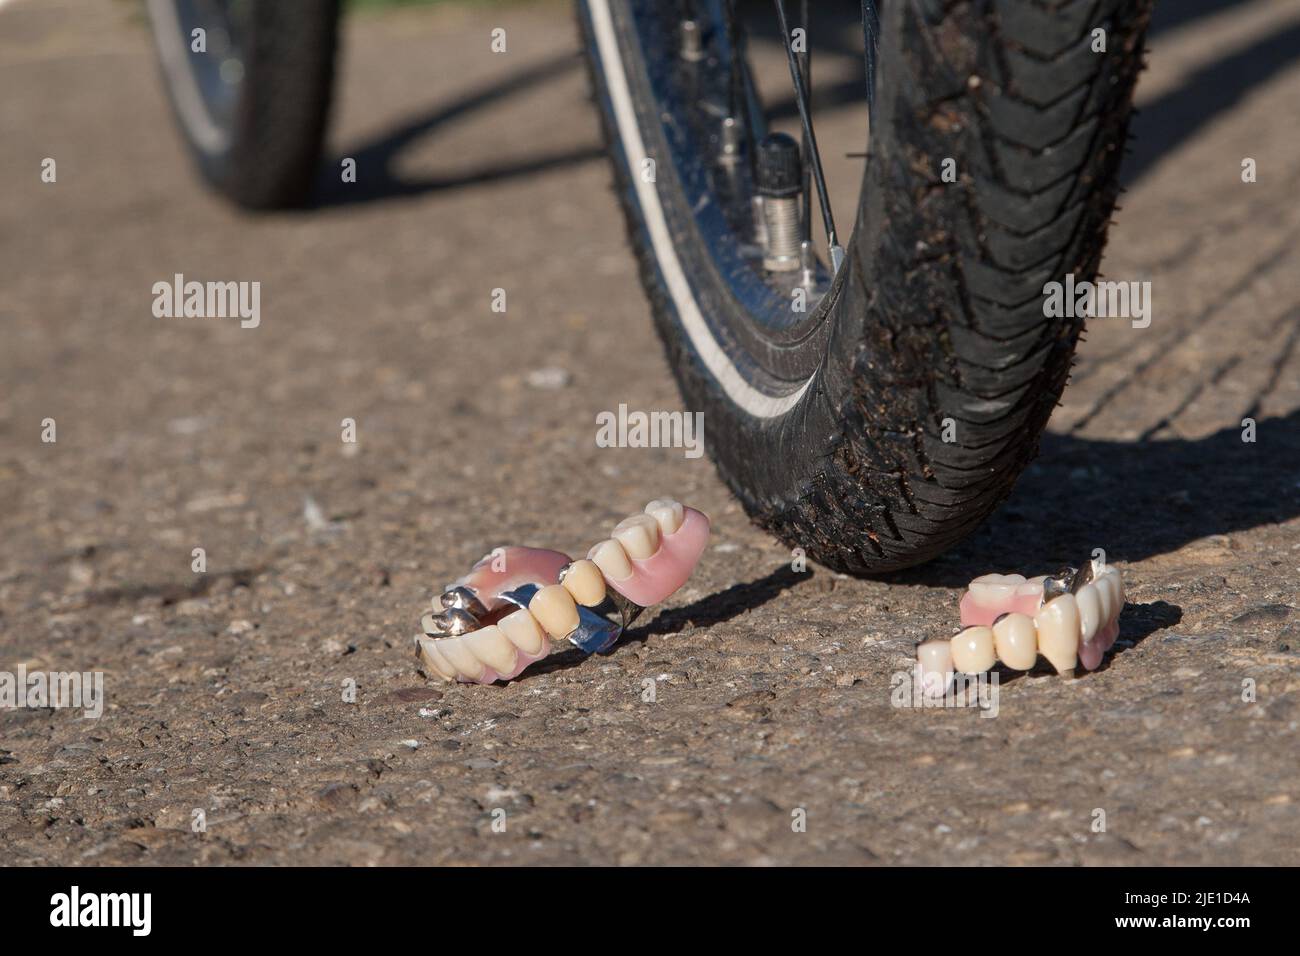 Una dentiera si trova accanto a una bicicletta sulla strada. Per evitare incidenti, i ciclisti devono prestare particolare attenzione ai pedoni più anziani. Foto Stock